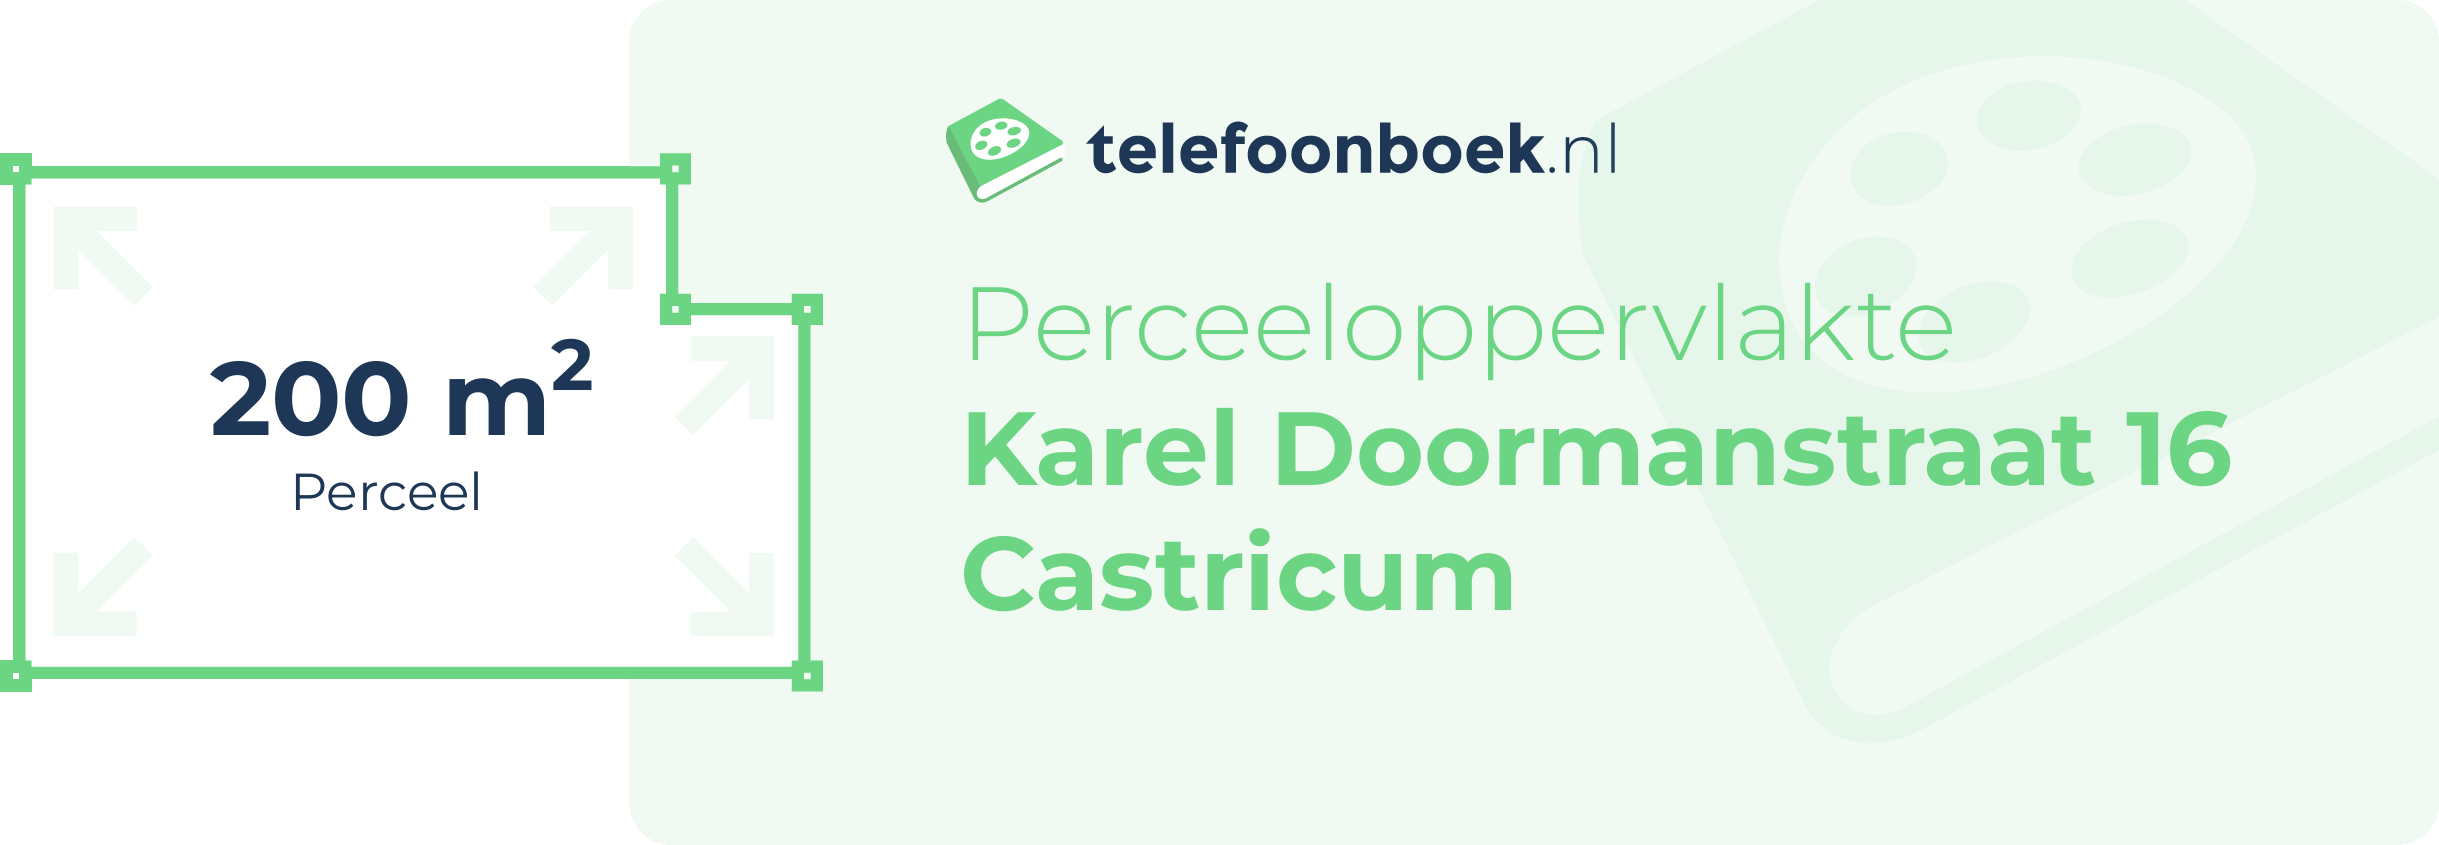 Perceeloppervlakte Karel Doormanstraat 16 Castricum